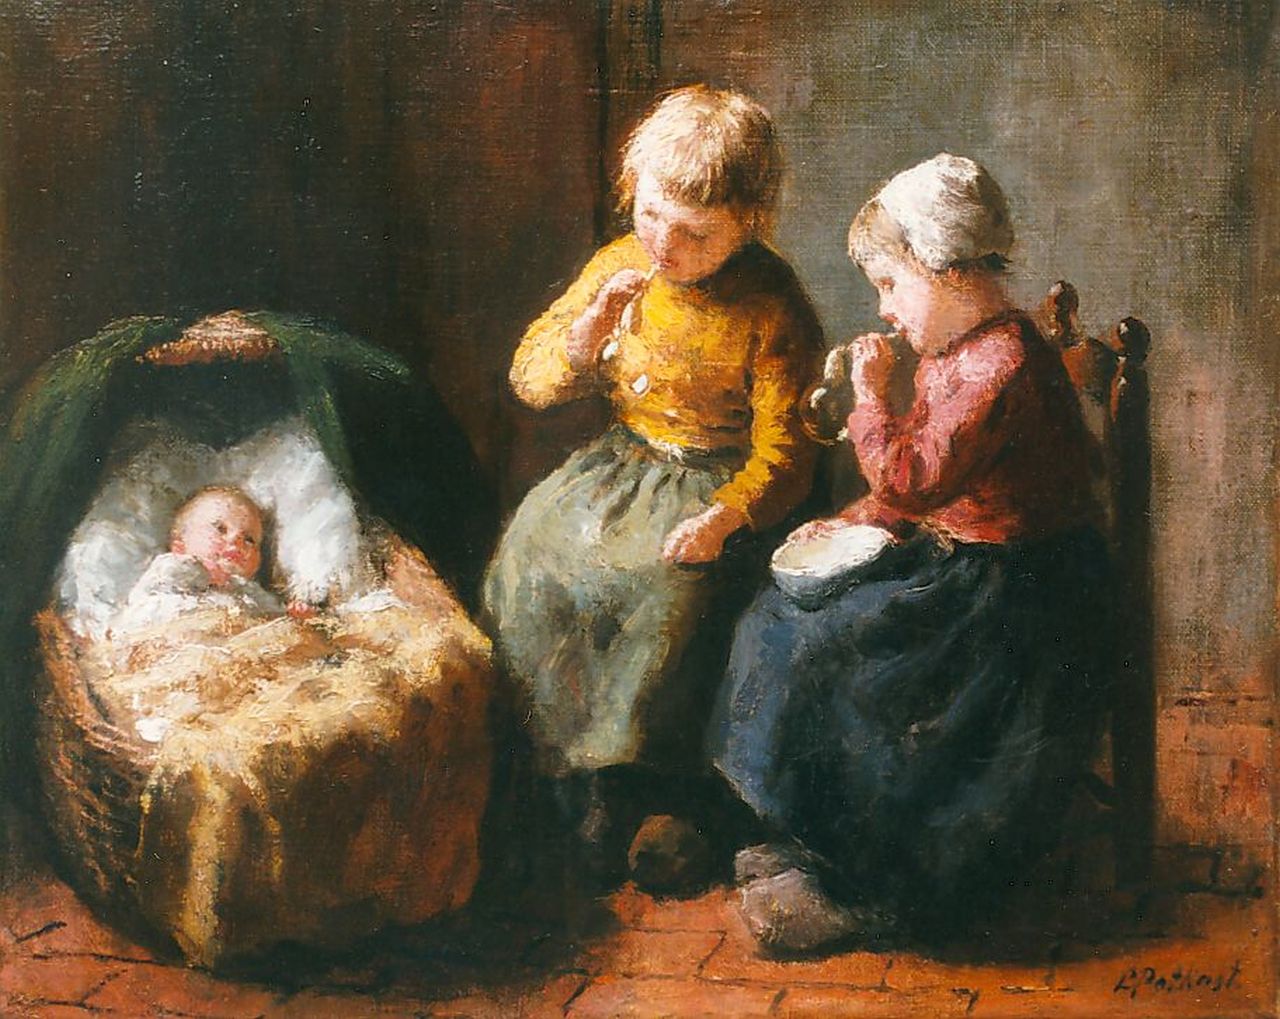 Pothast B.J.C.  | 'Bernard' Jean Corneille Pothast, Larens interieur met twee bellenblazende zusjes en baby, olieverf op doek 25,0 x 30,8 cm, gesigneerd rechtsonder